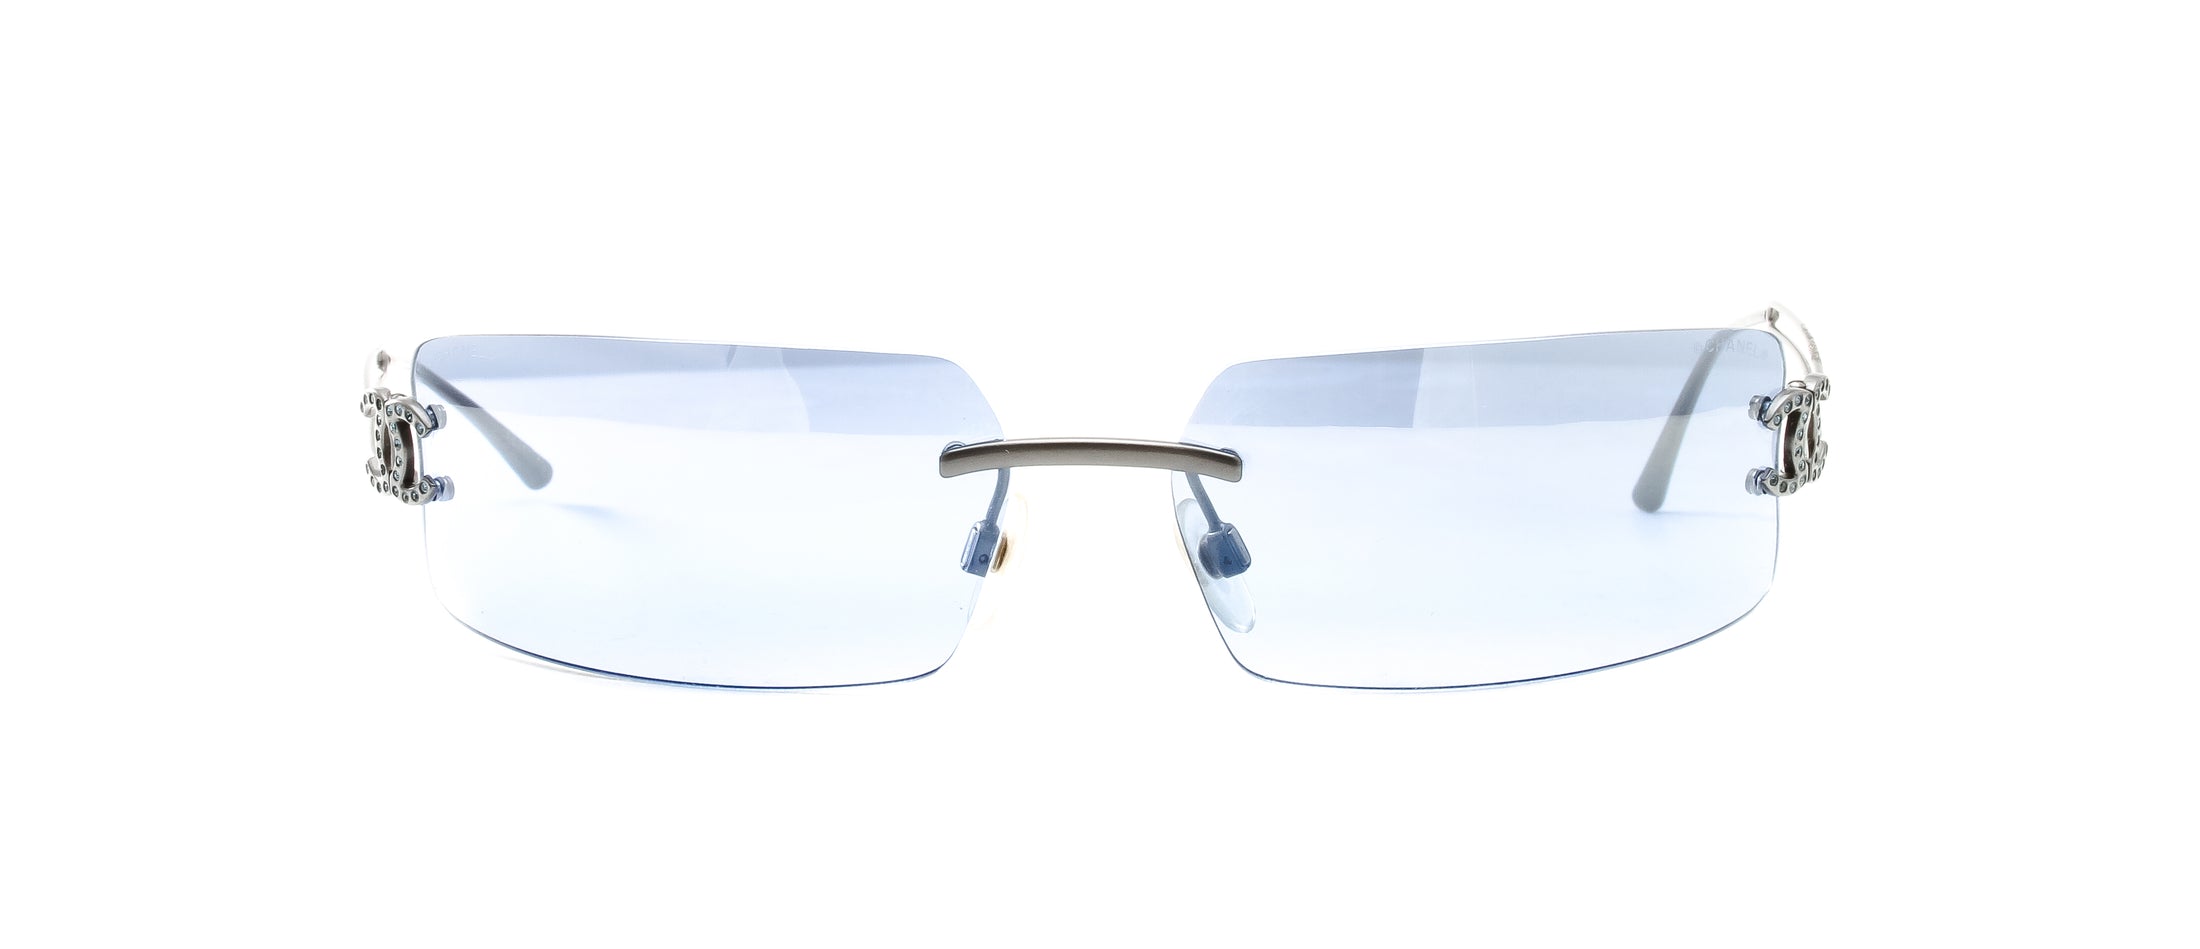 NEW Chanel 2044T SemiRimless G8872 Eyeglasses Frames  eBay